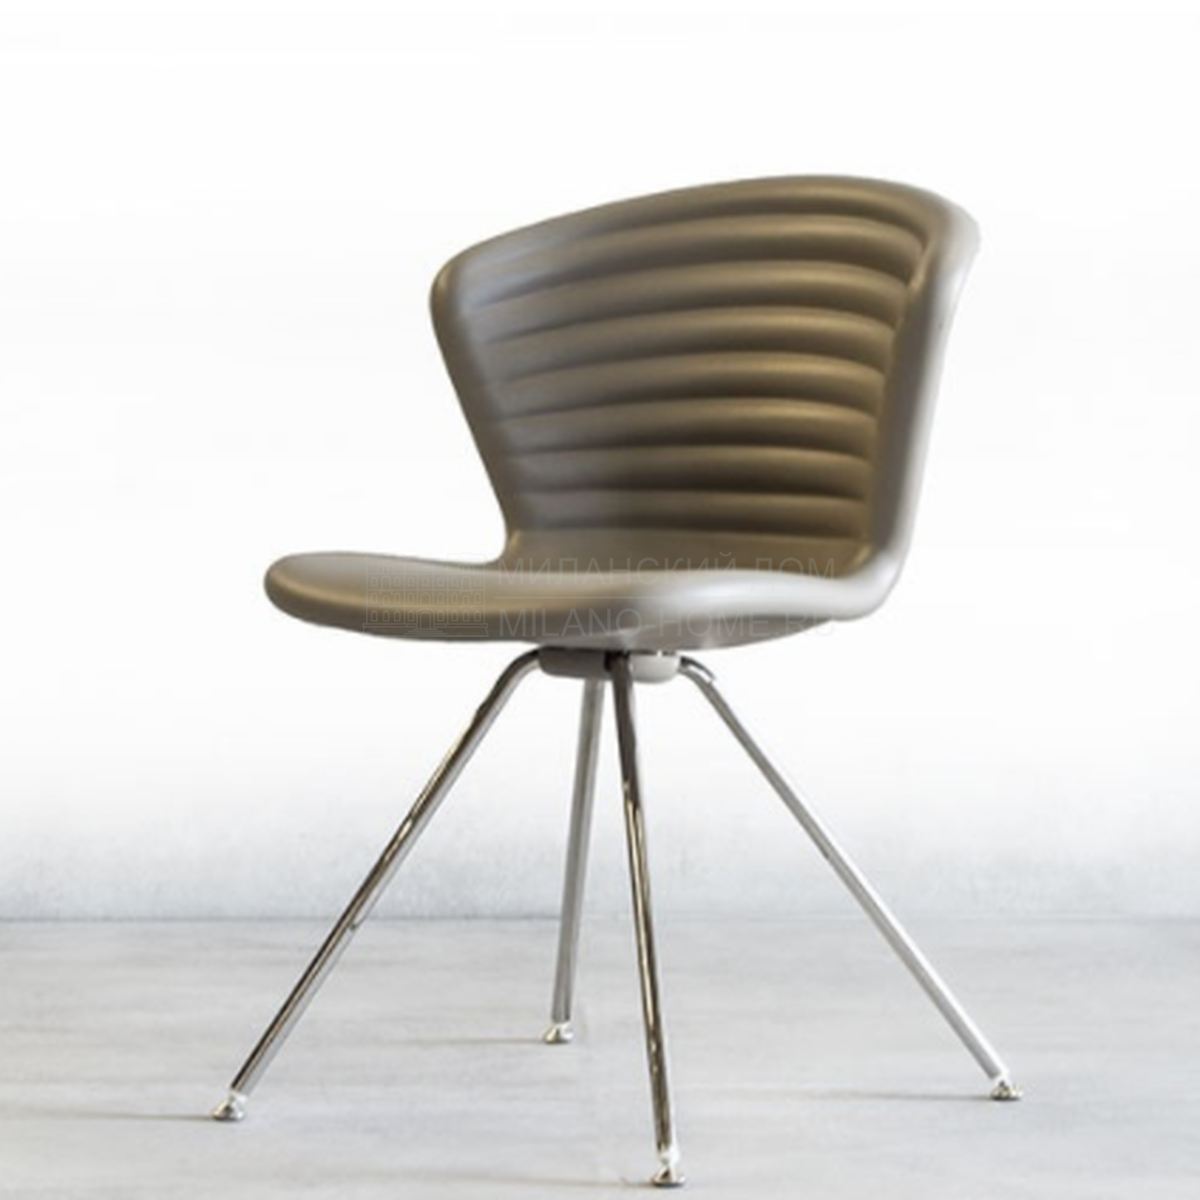 Металлический / Пластиковый стул Marshmallow из Италии фабрики TONON